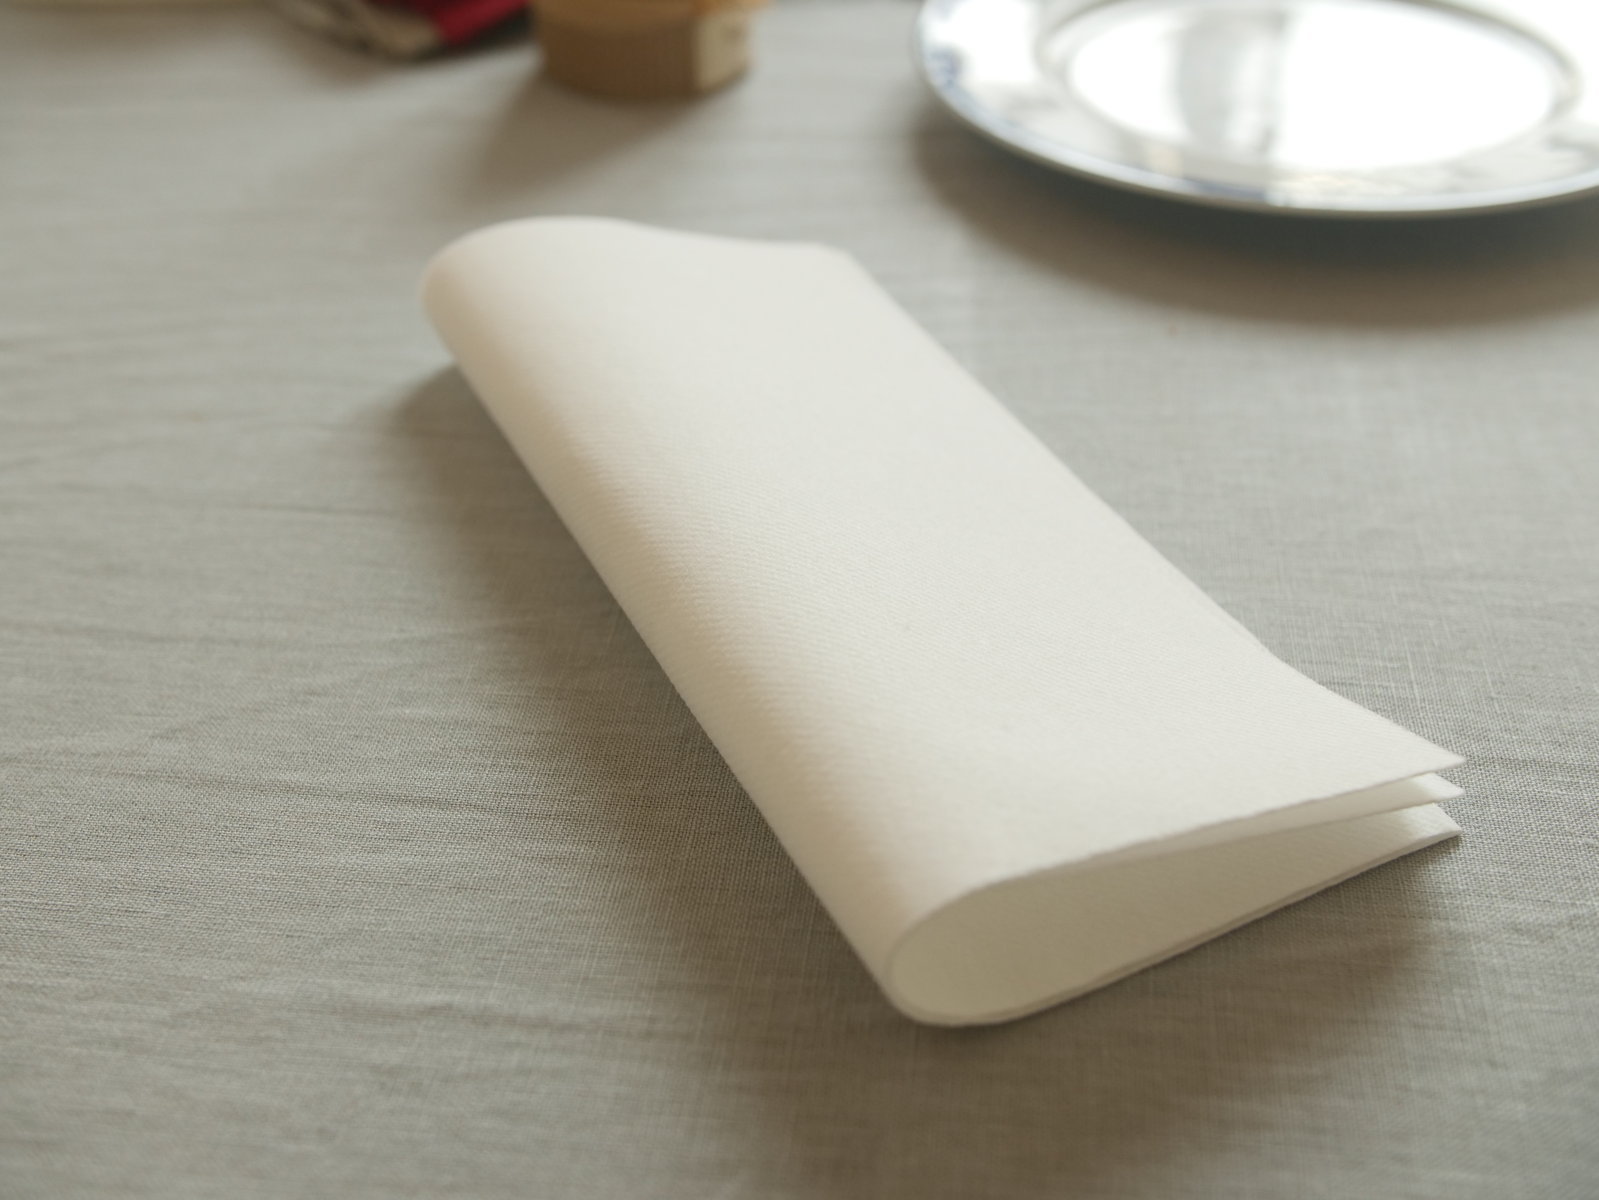 LEKOCH Serviette Jetable de Table en Papier | Essuie-Mains Air-laid  Serviettes de Décoration pour Mariage, Anniversaire, Restaurant, Cuisine |  40 cm x